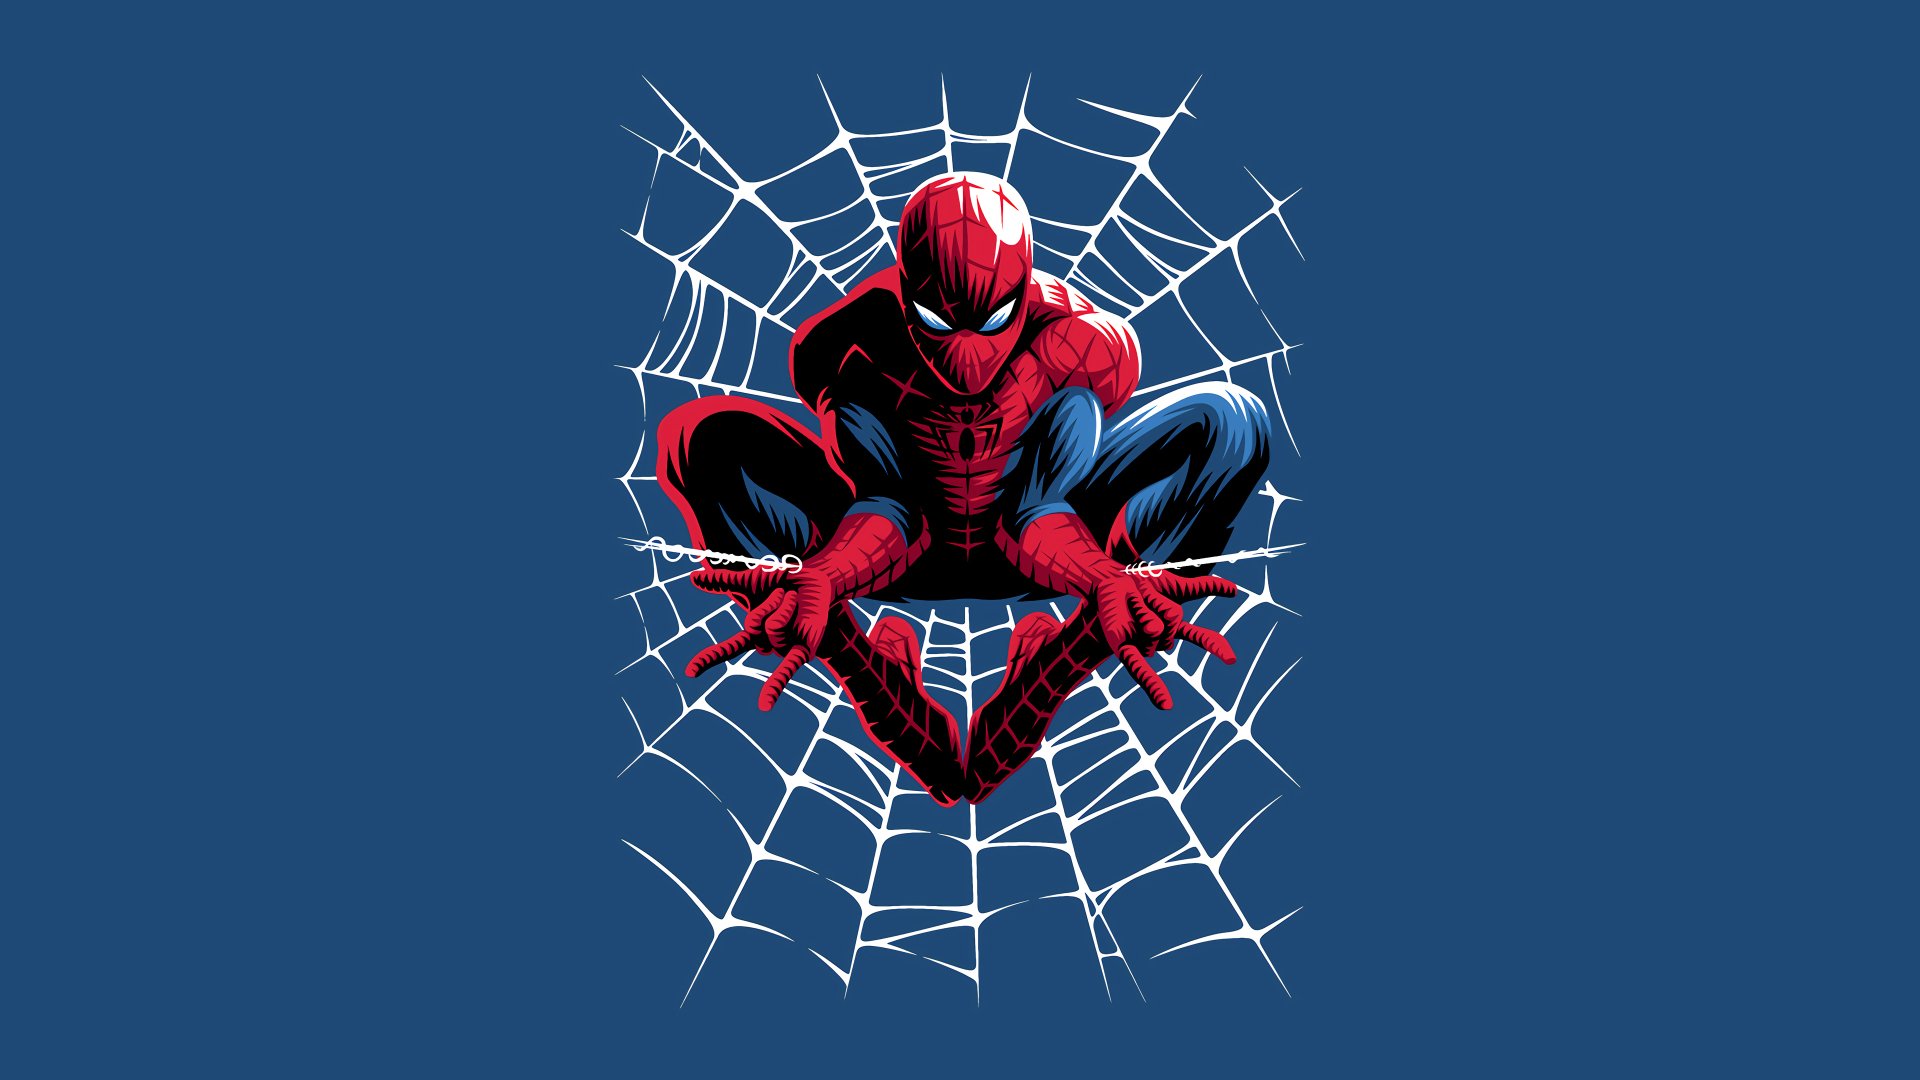 3840x2160 Spider-Man Wallpaper Background Image. 